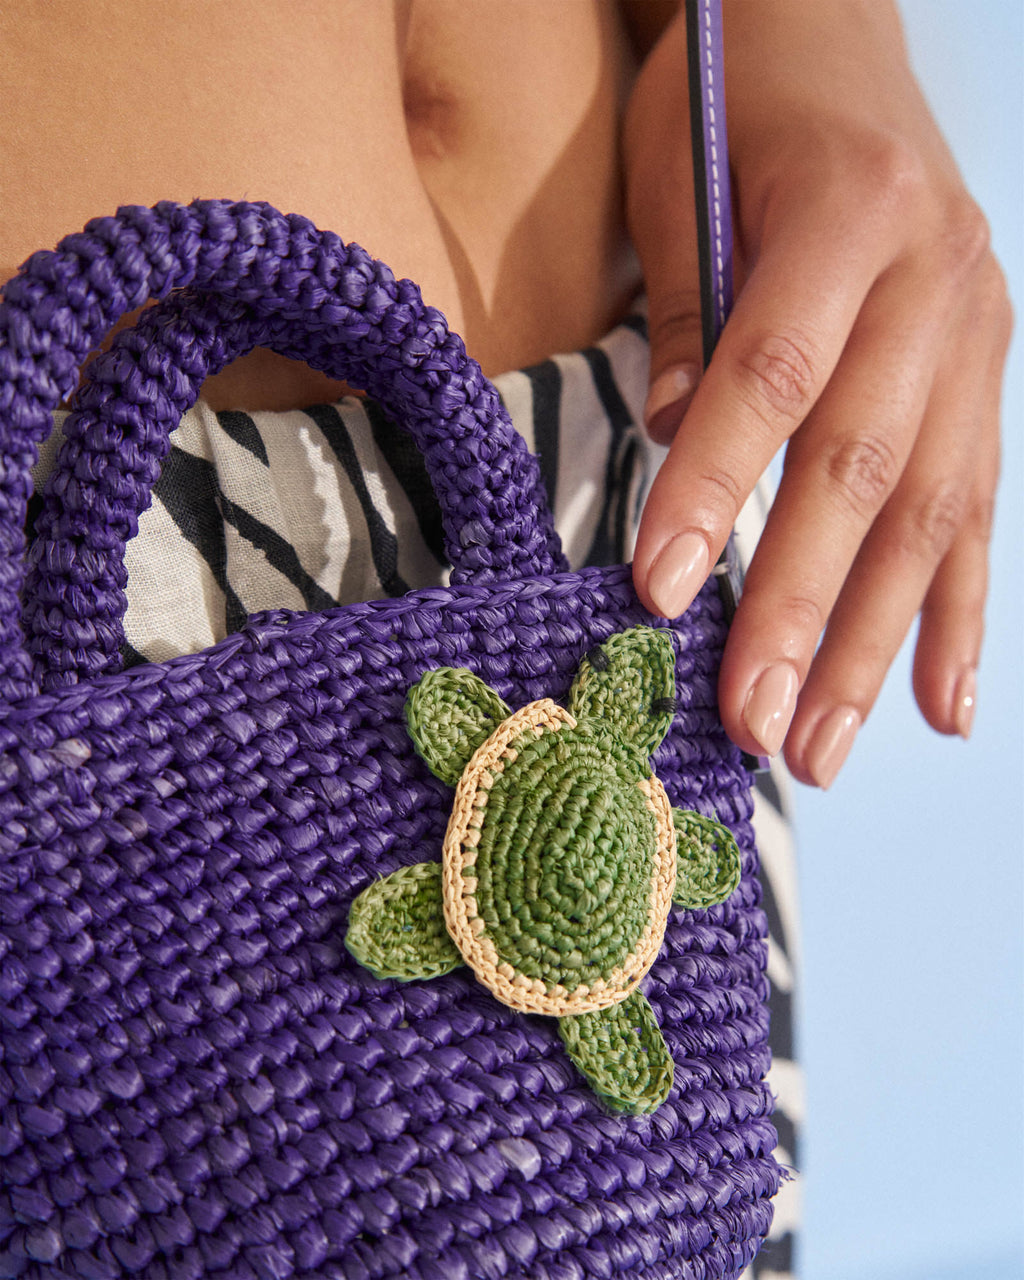 Raffia & Leather Summer Bag Mini - Summer Purple with Turtle